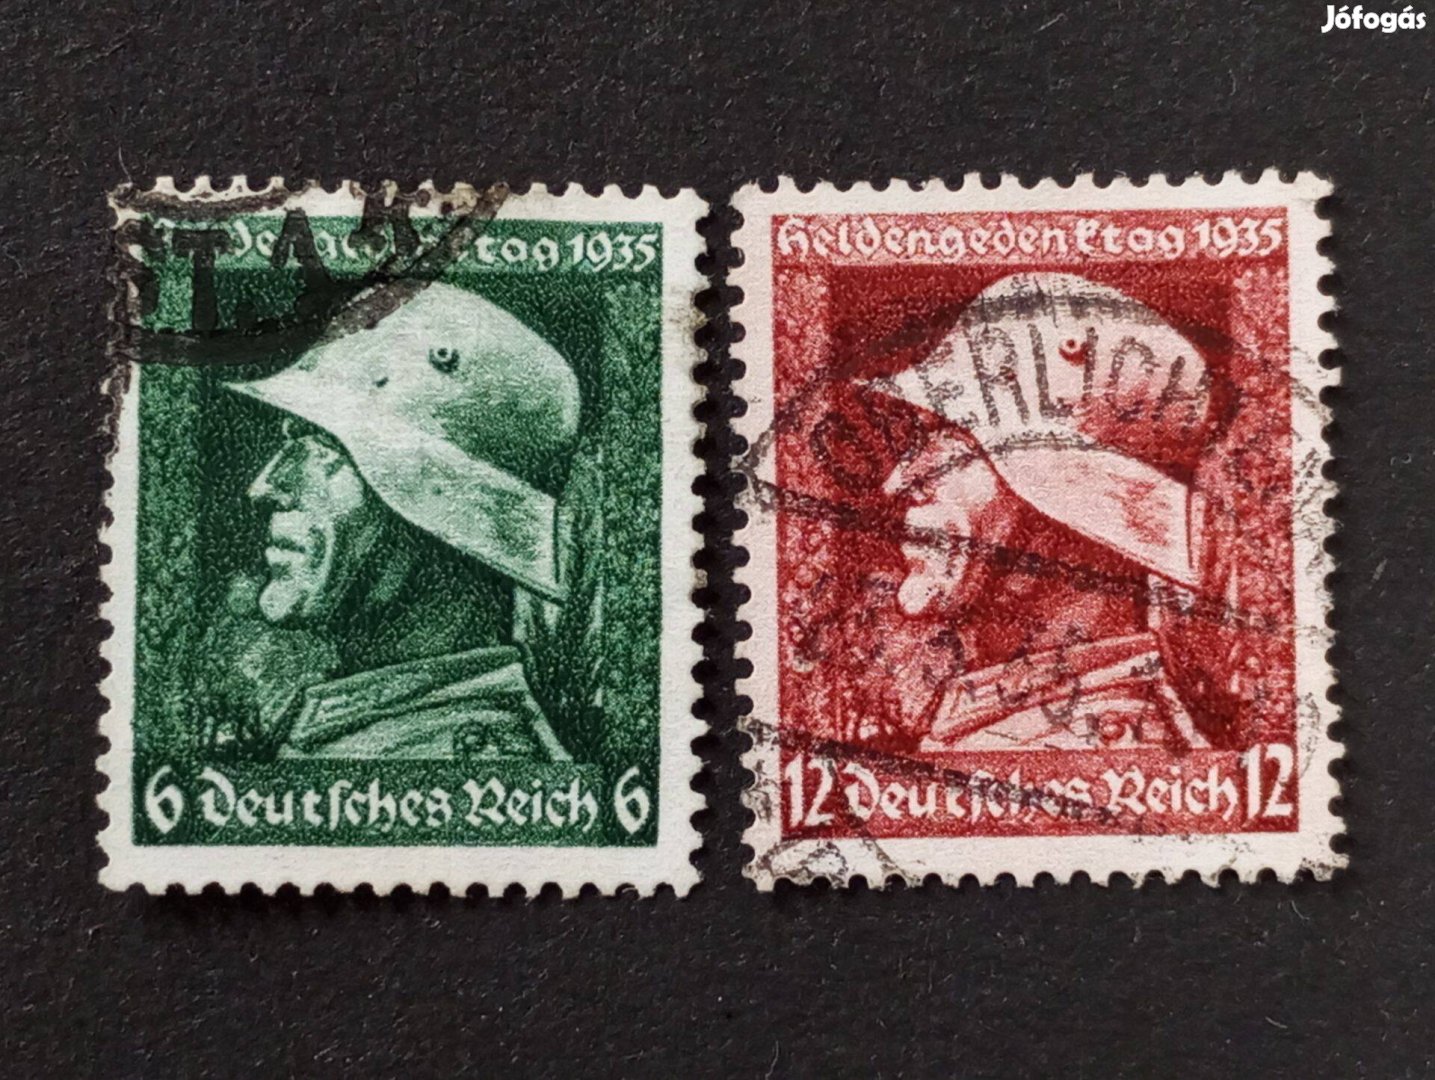 Deutsches Reich 1935. a hősök emléknapja Komplett pecsételt bélyegsor